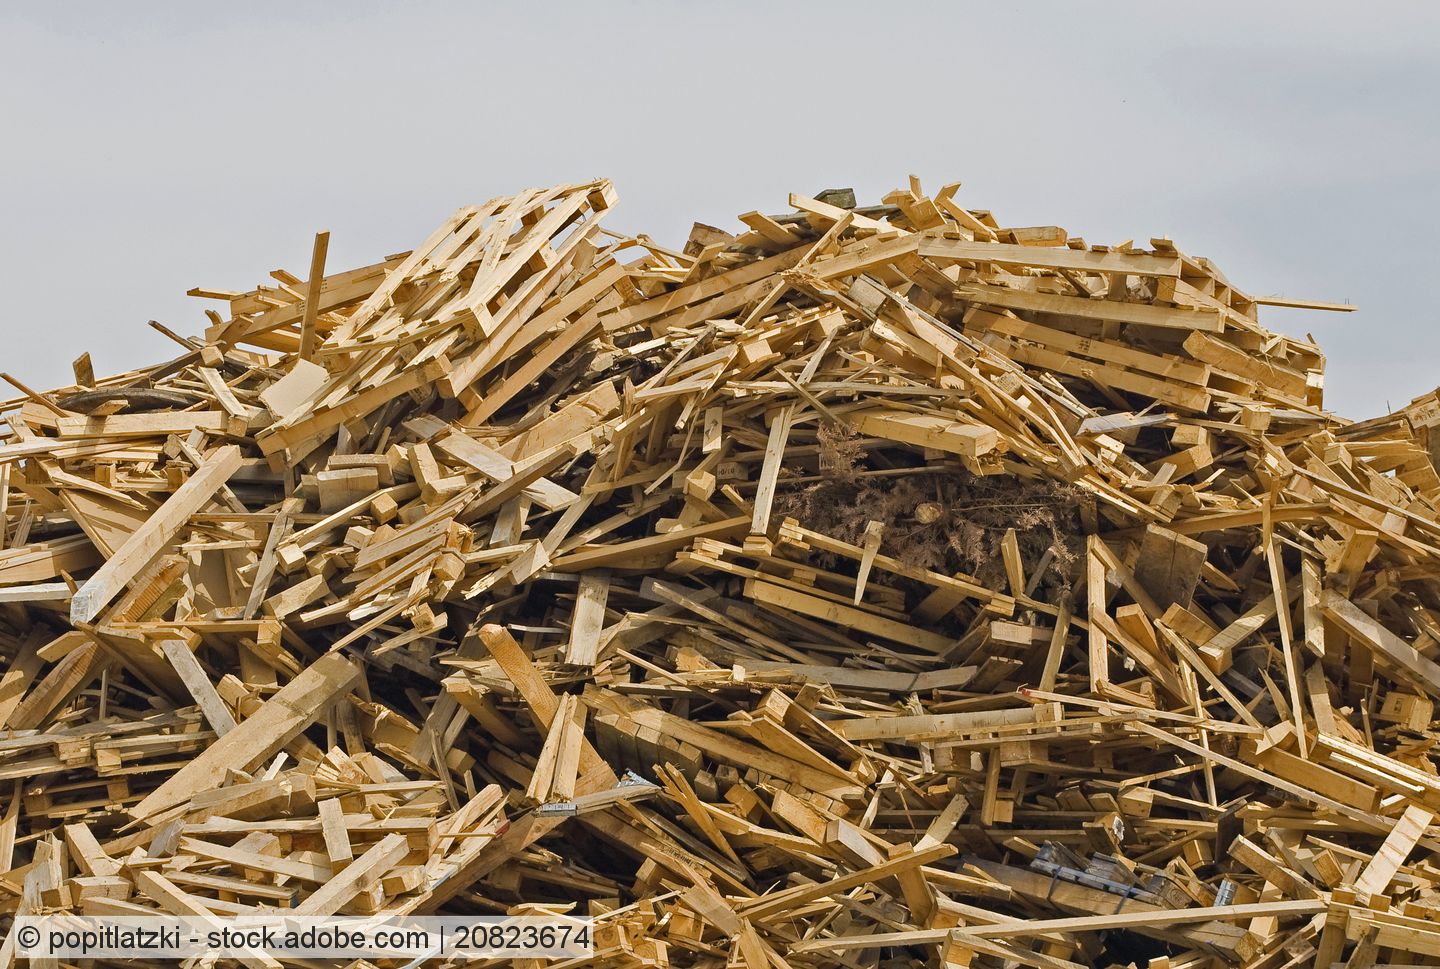 Preise auf Altholzmarkt trotz wachsender Unsicherheit noch überwiegend stabil